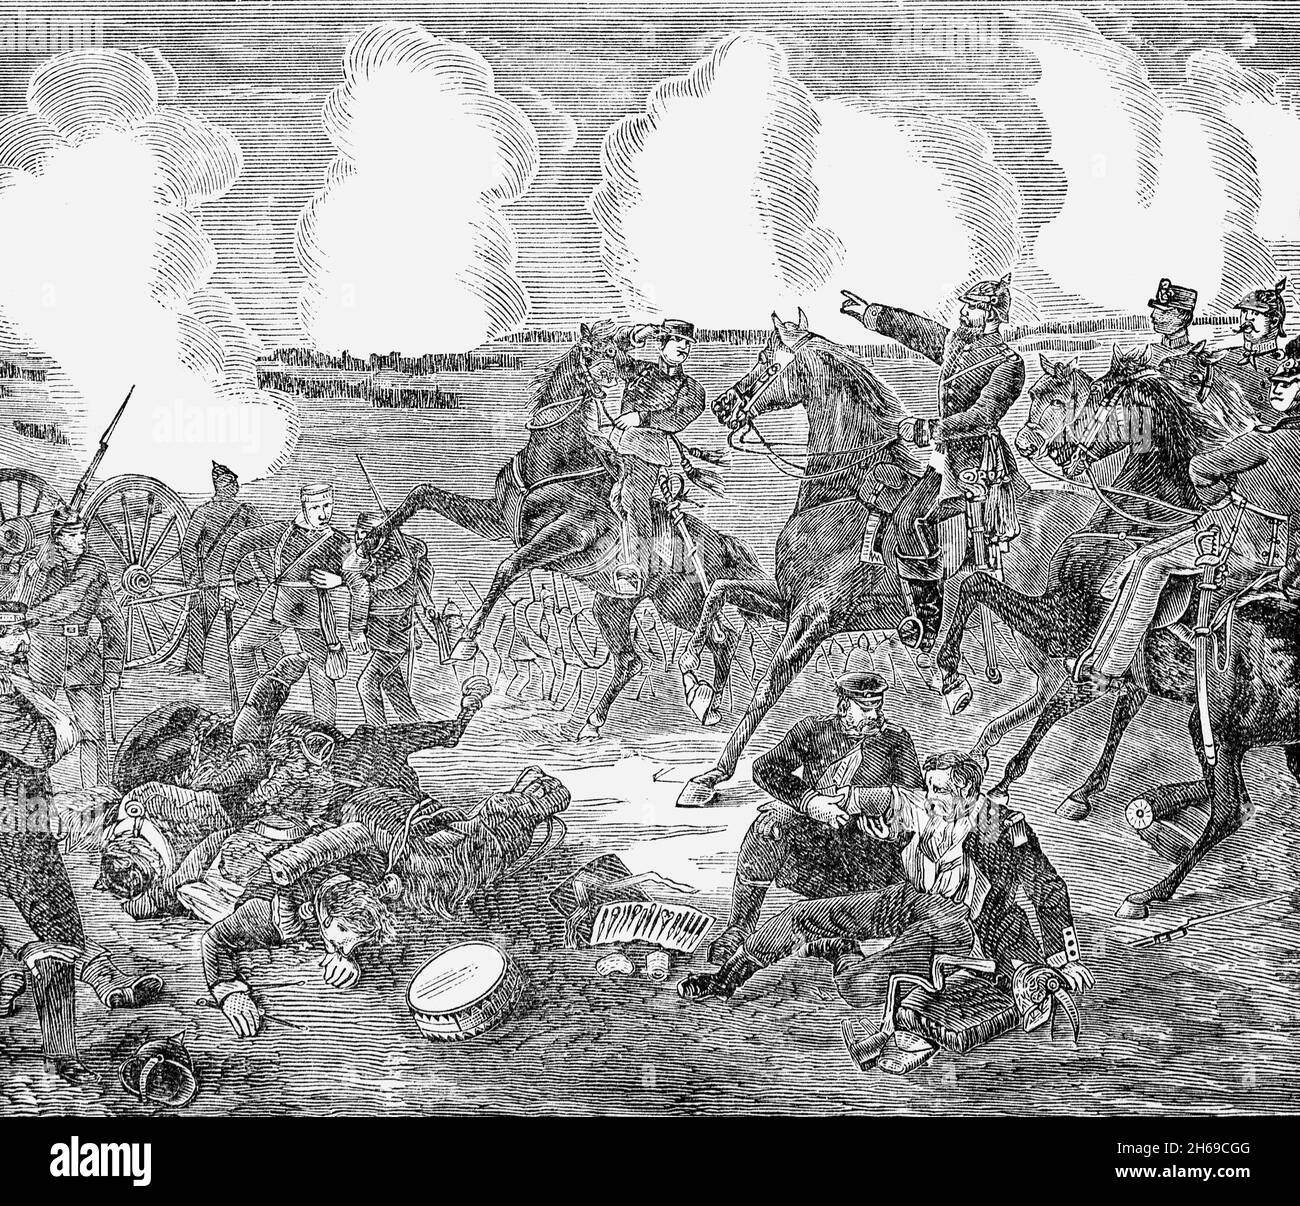 Eine Illustration der Schlacht von Gravelotte aus dem späten 19. Jahrhundert, die am 18. August 1870 stattfand, der größten Schlacht des französisch-preußischen Krieges. Benannt nach Gravelotte, einem Dorf in Lothringen, wurde es etwa 10 Kilometer westlich von Metz bekämpft und führte zur vollständigen Zerstörung der französischen Streitkräfte. Stockfoto